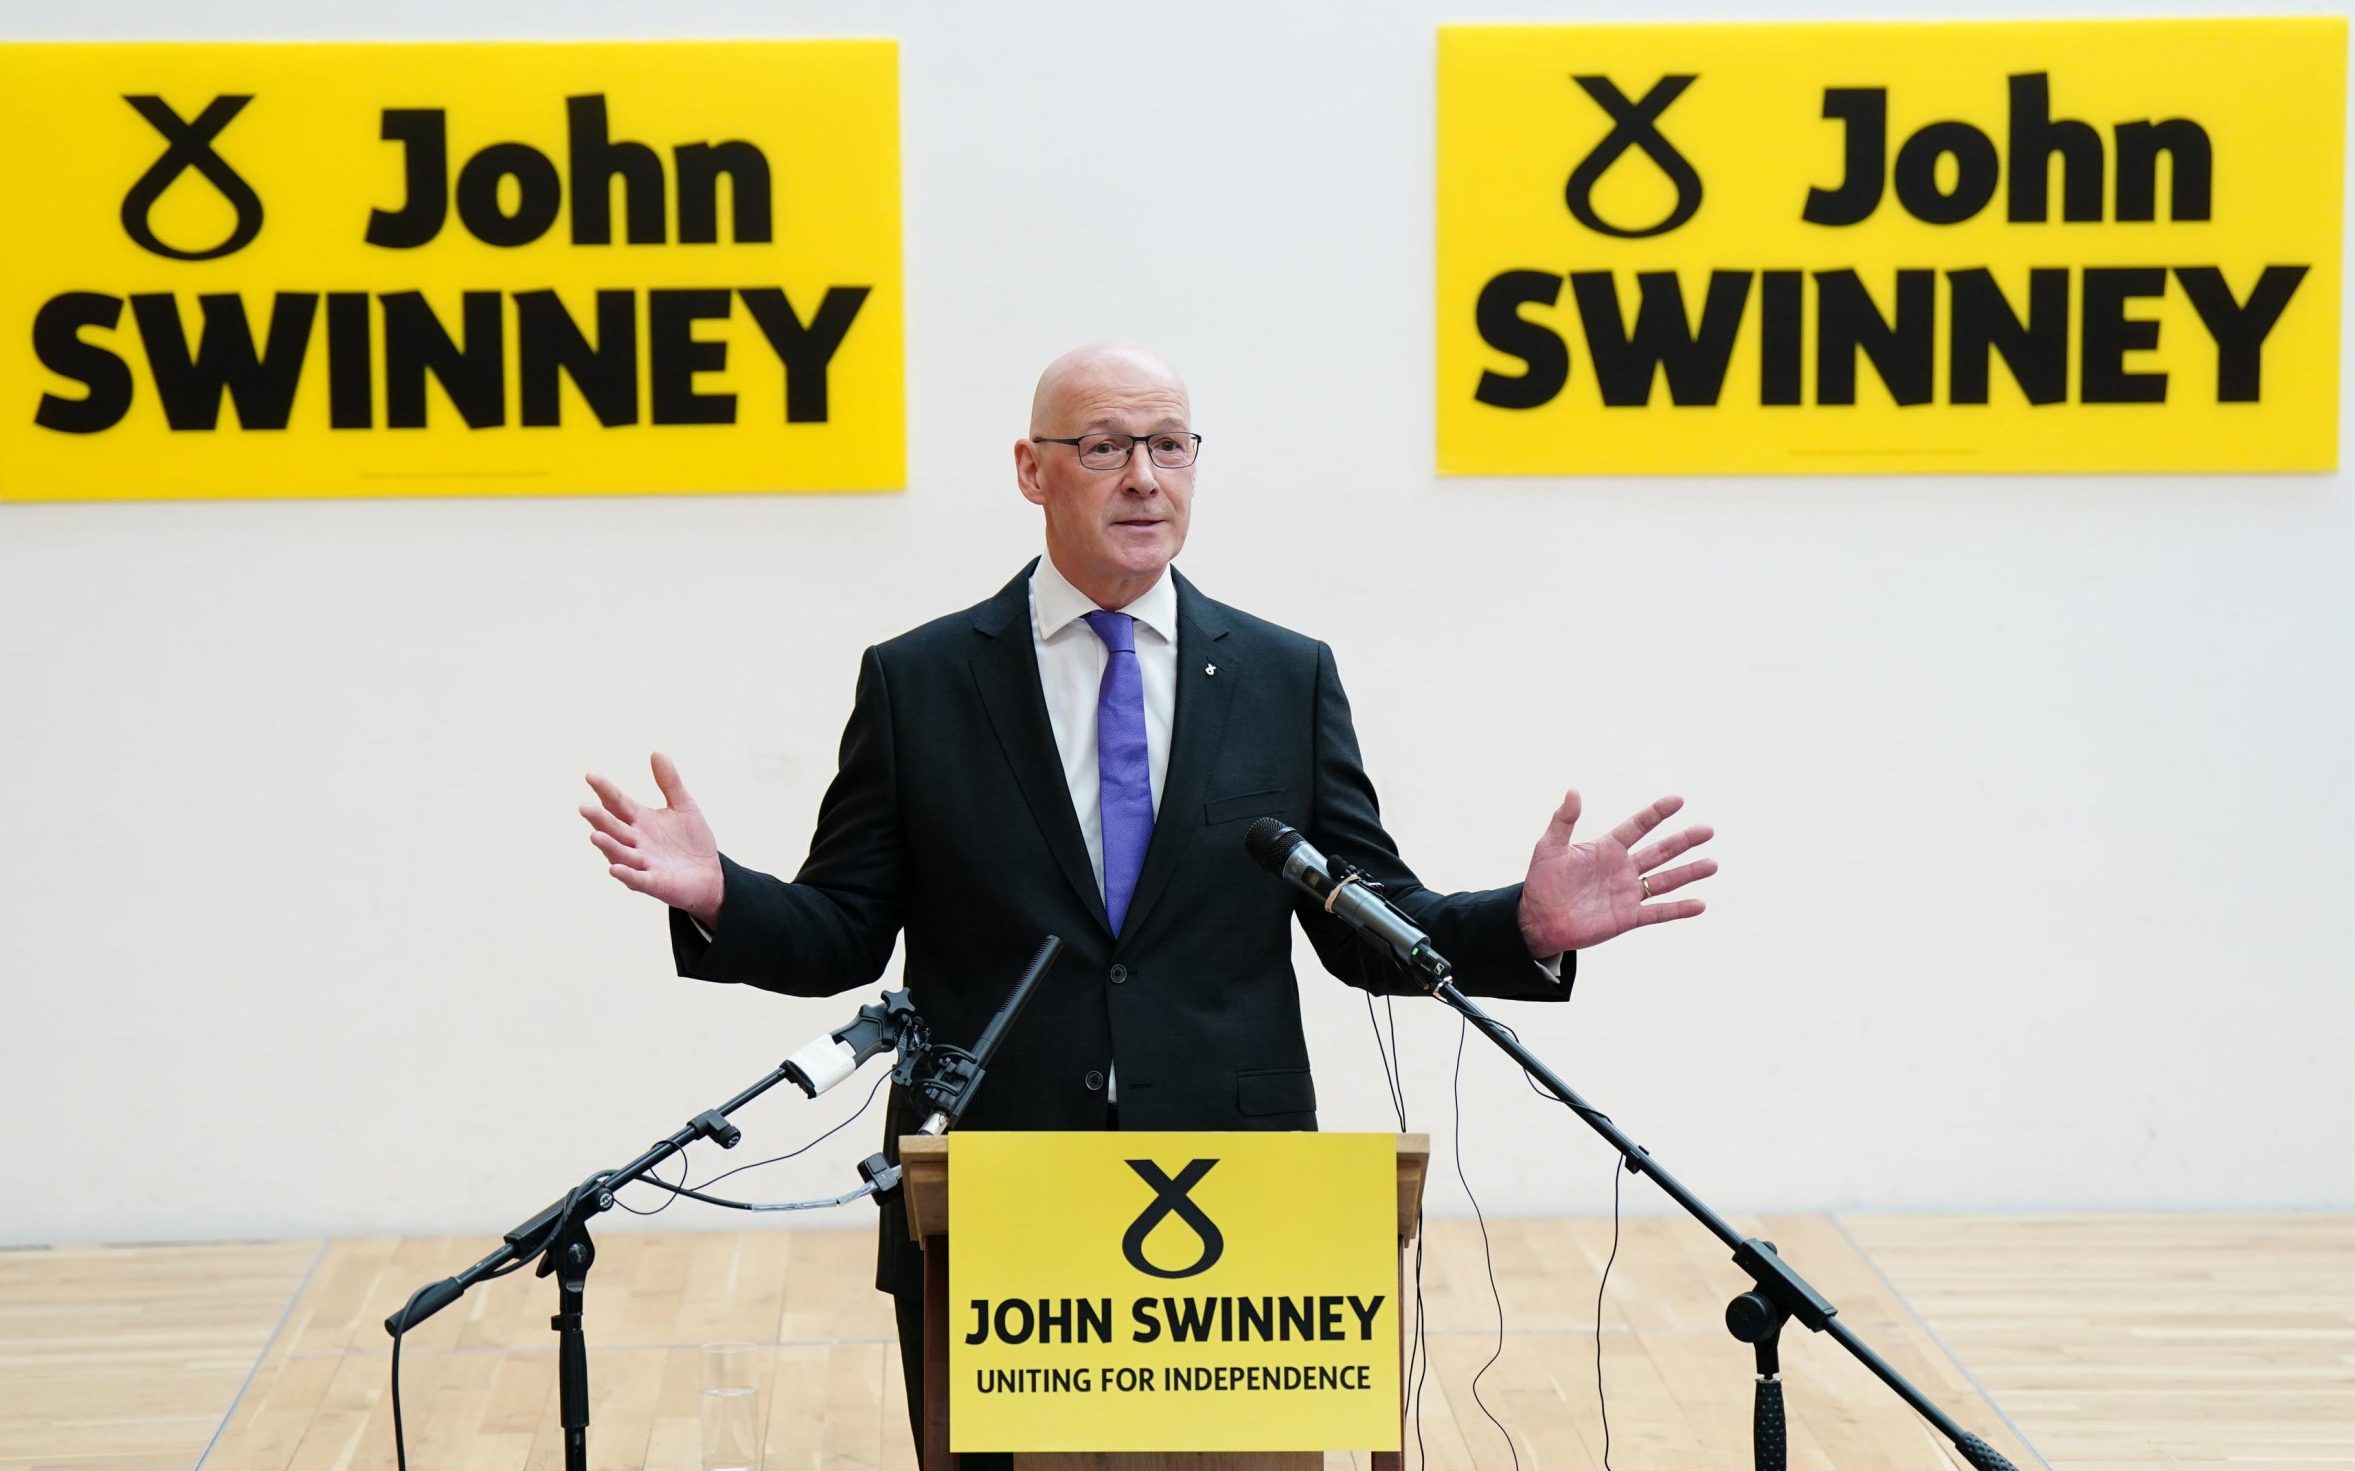 snp activist to run against john swinney for party leadership